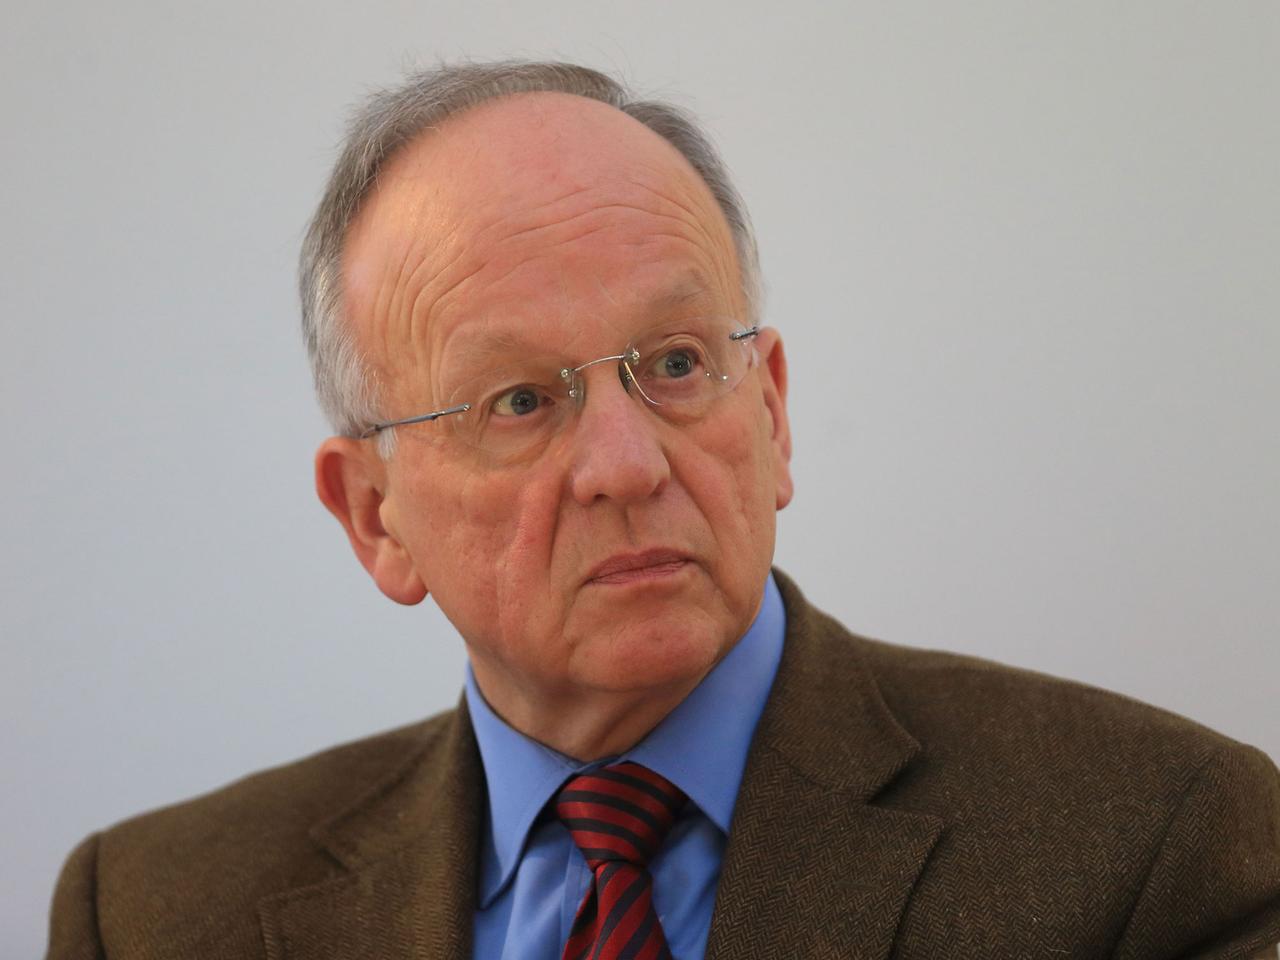 Hermann Onko Aeikens (CDU), Minister für Landwirtschaft und Umwelt des Landes Sachsen-Anhalt